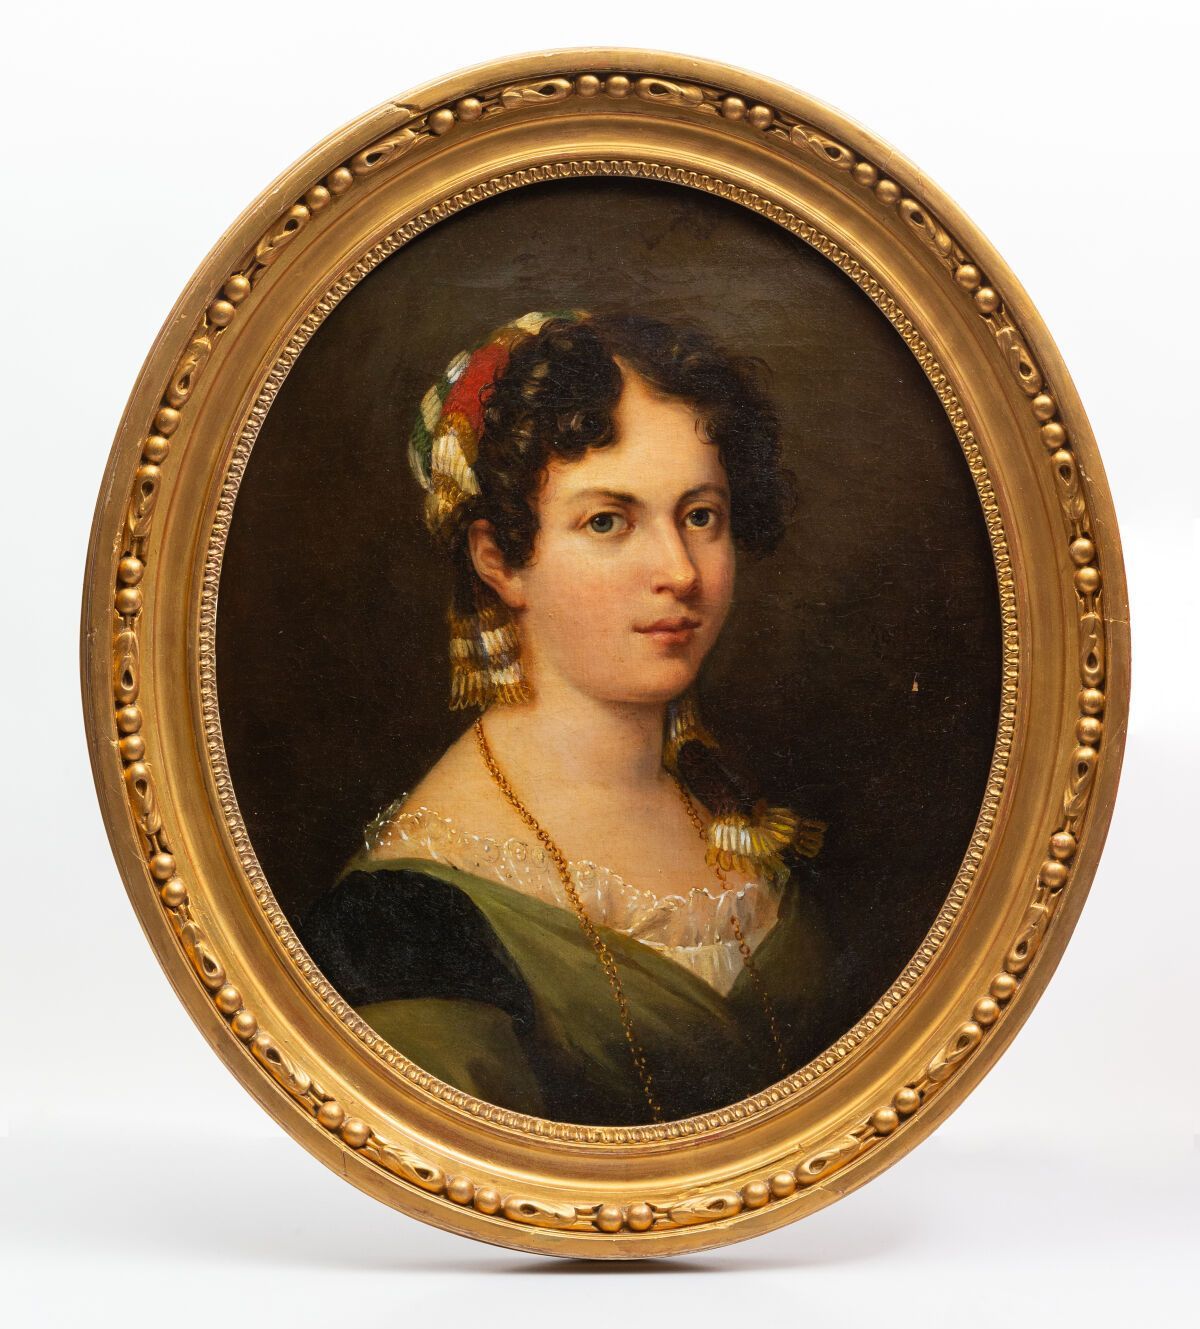 Null 18世纪末的西班牙学校。
戴着金项链的女人的肖像。
椭圆形画布上的油画。
高_53厘米，宽_44厘米
装在装饰有心形葡萄的镀金框架内。